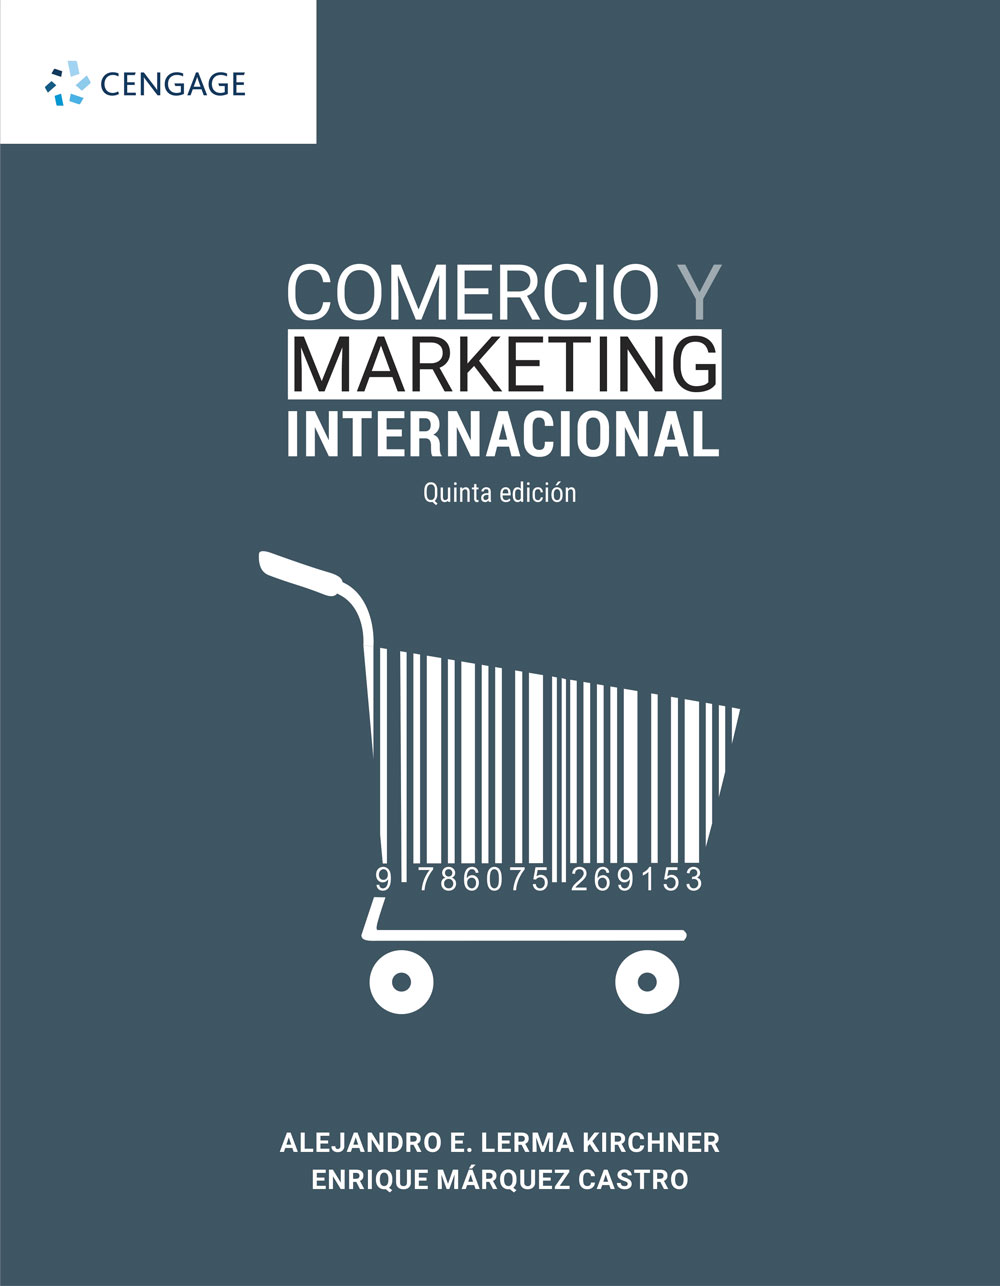 Comercio y marketing internacional